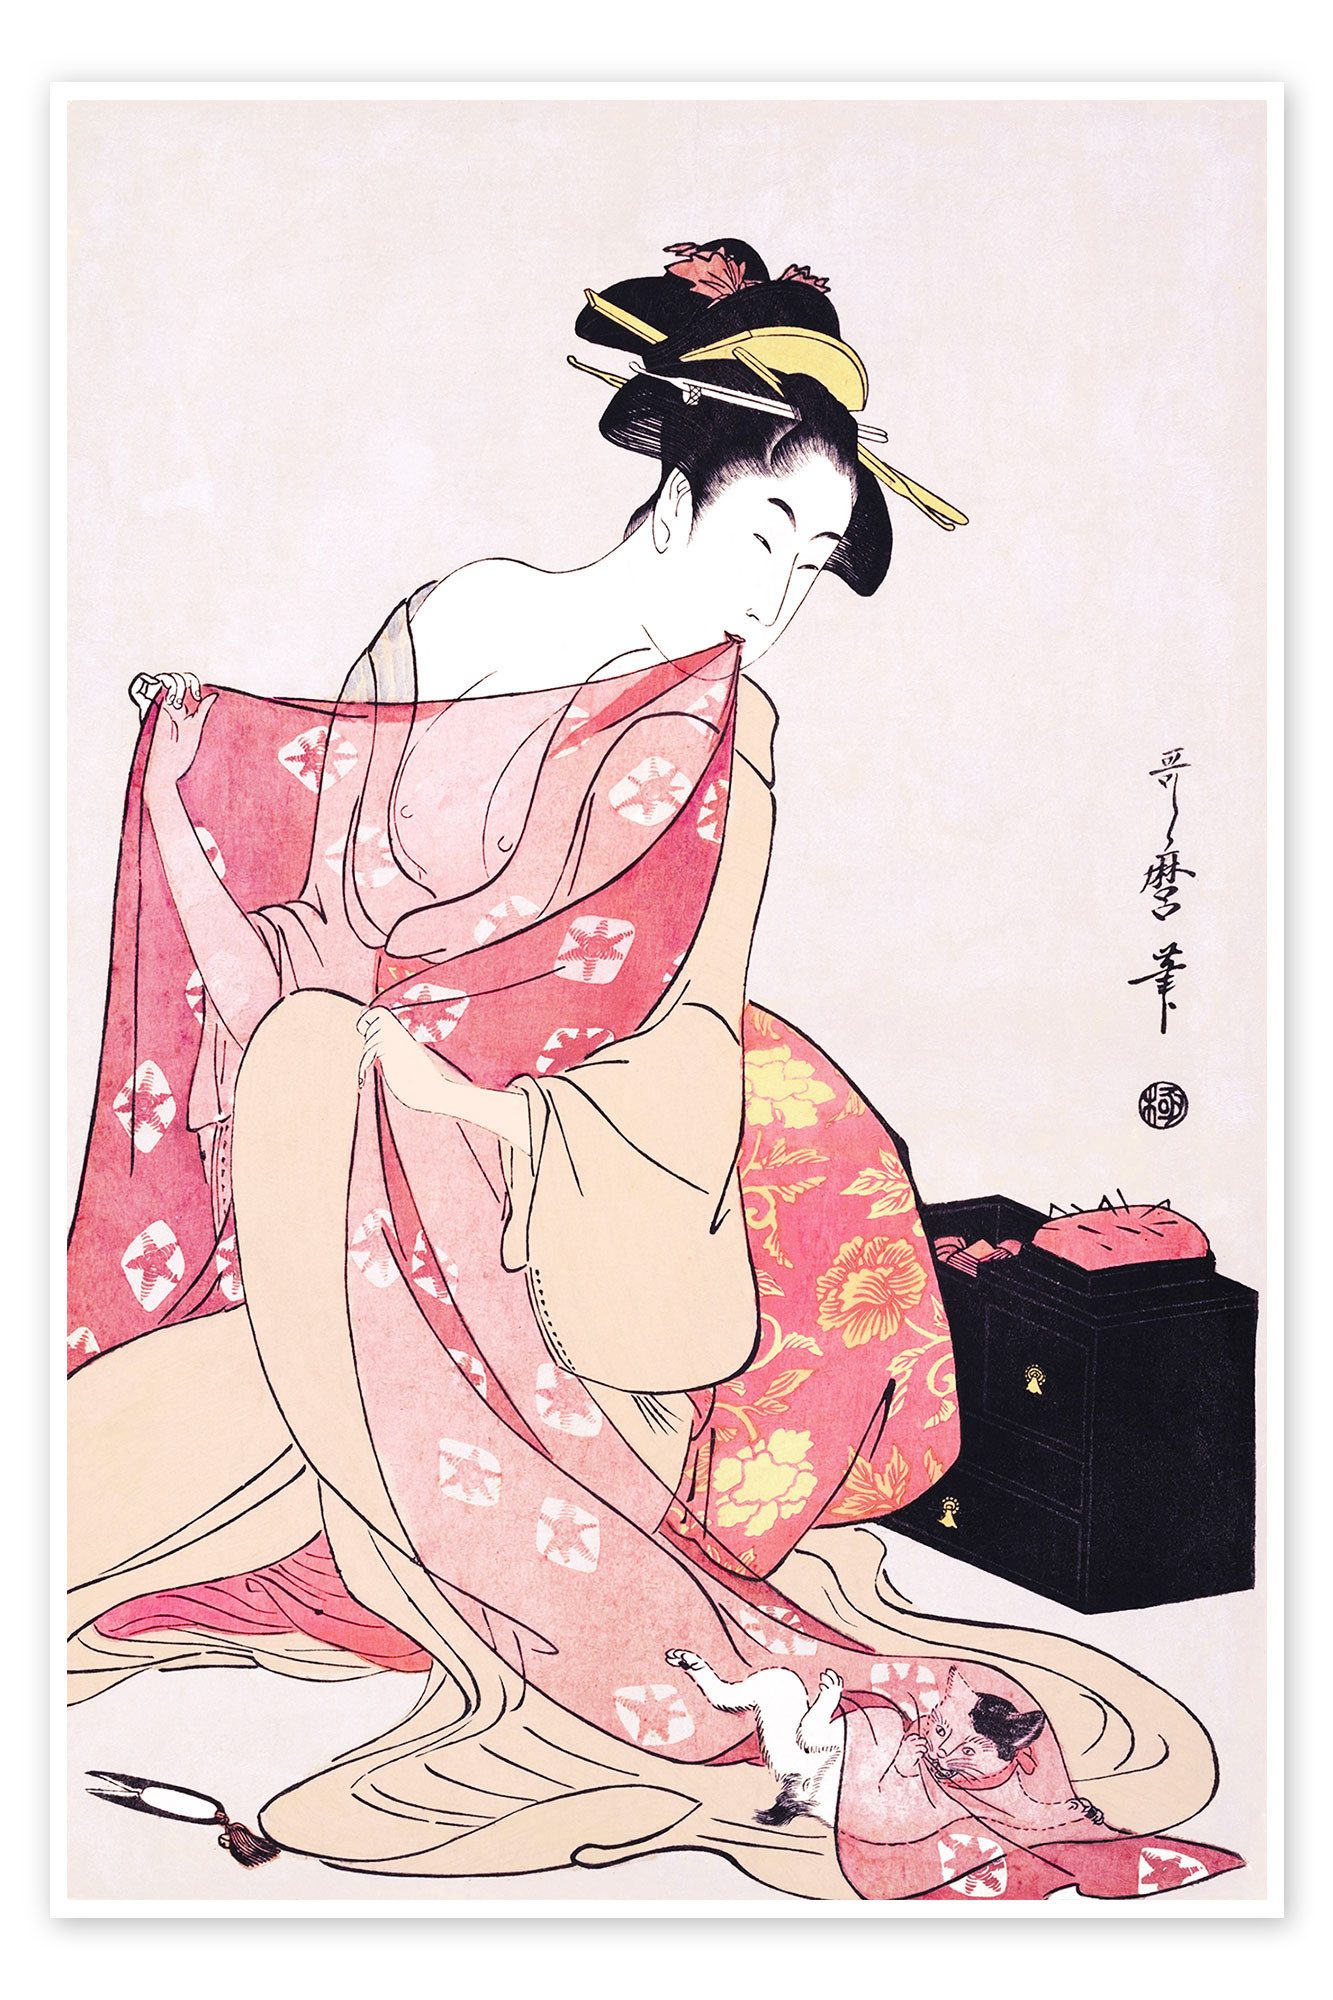 Posterlounge Poster Kitagawa Utamaro, Frau und eine Katze, Malerei